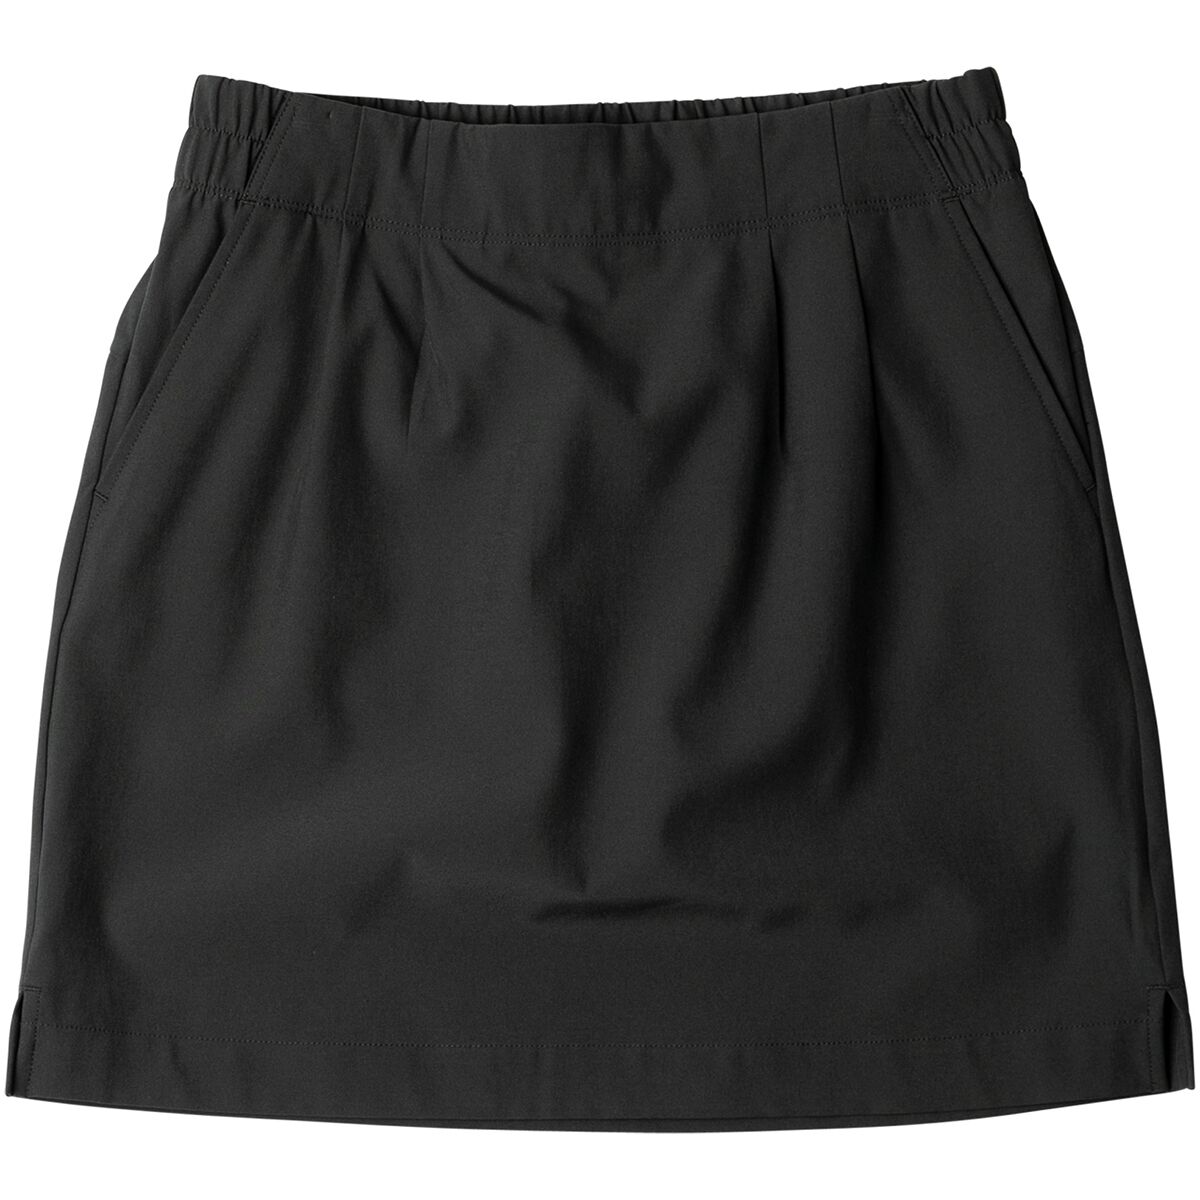 KAVU Windswell Skirt - Women's